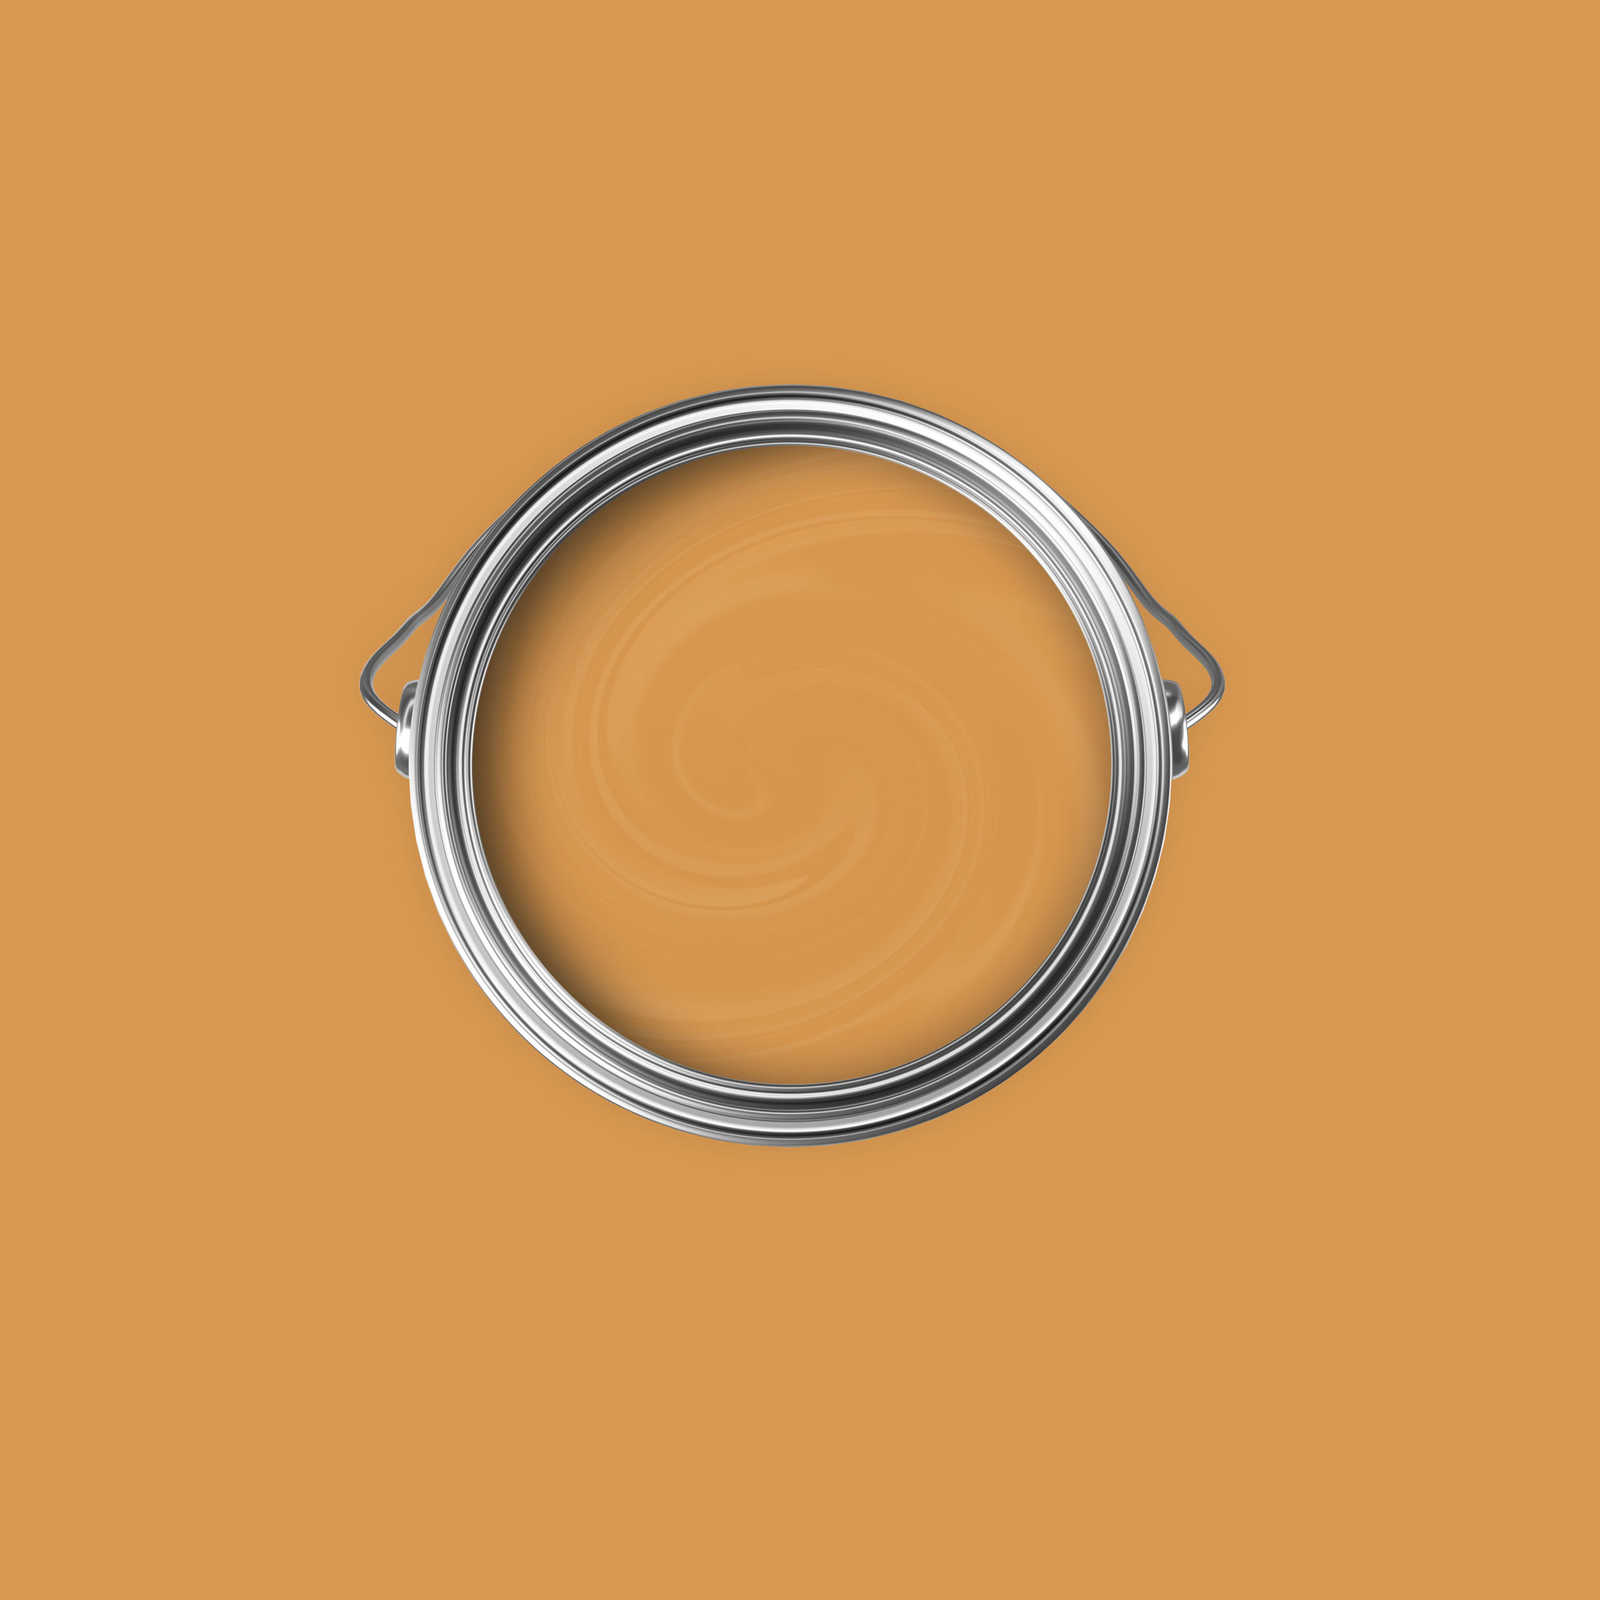             Premium Muurverf Warm Oranje »Beige Orange/Sassy Saffron« NW813 – 2,5 Liter
        